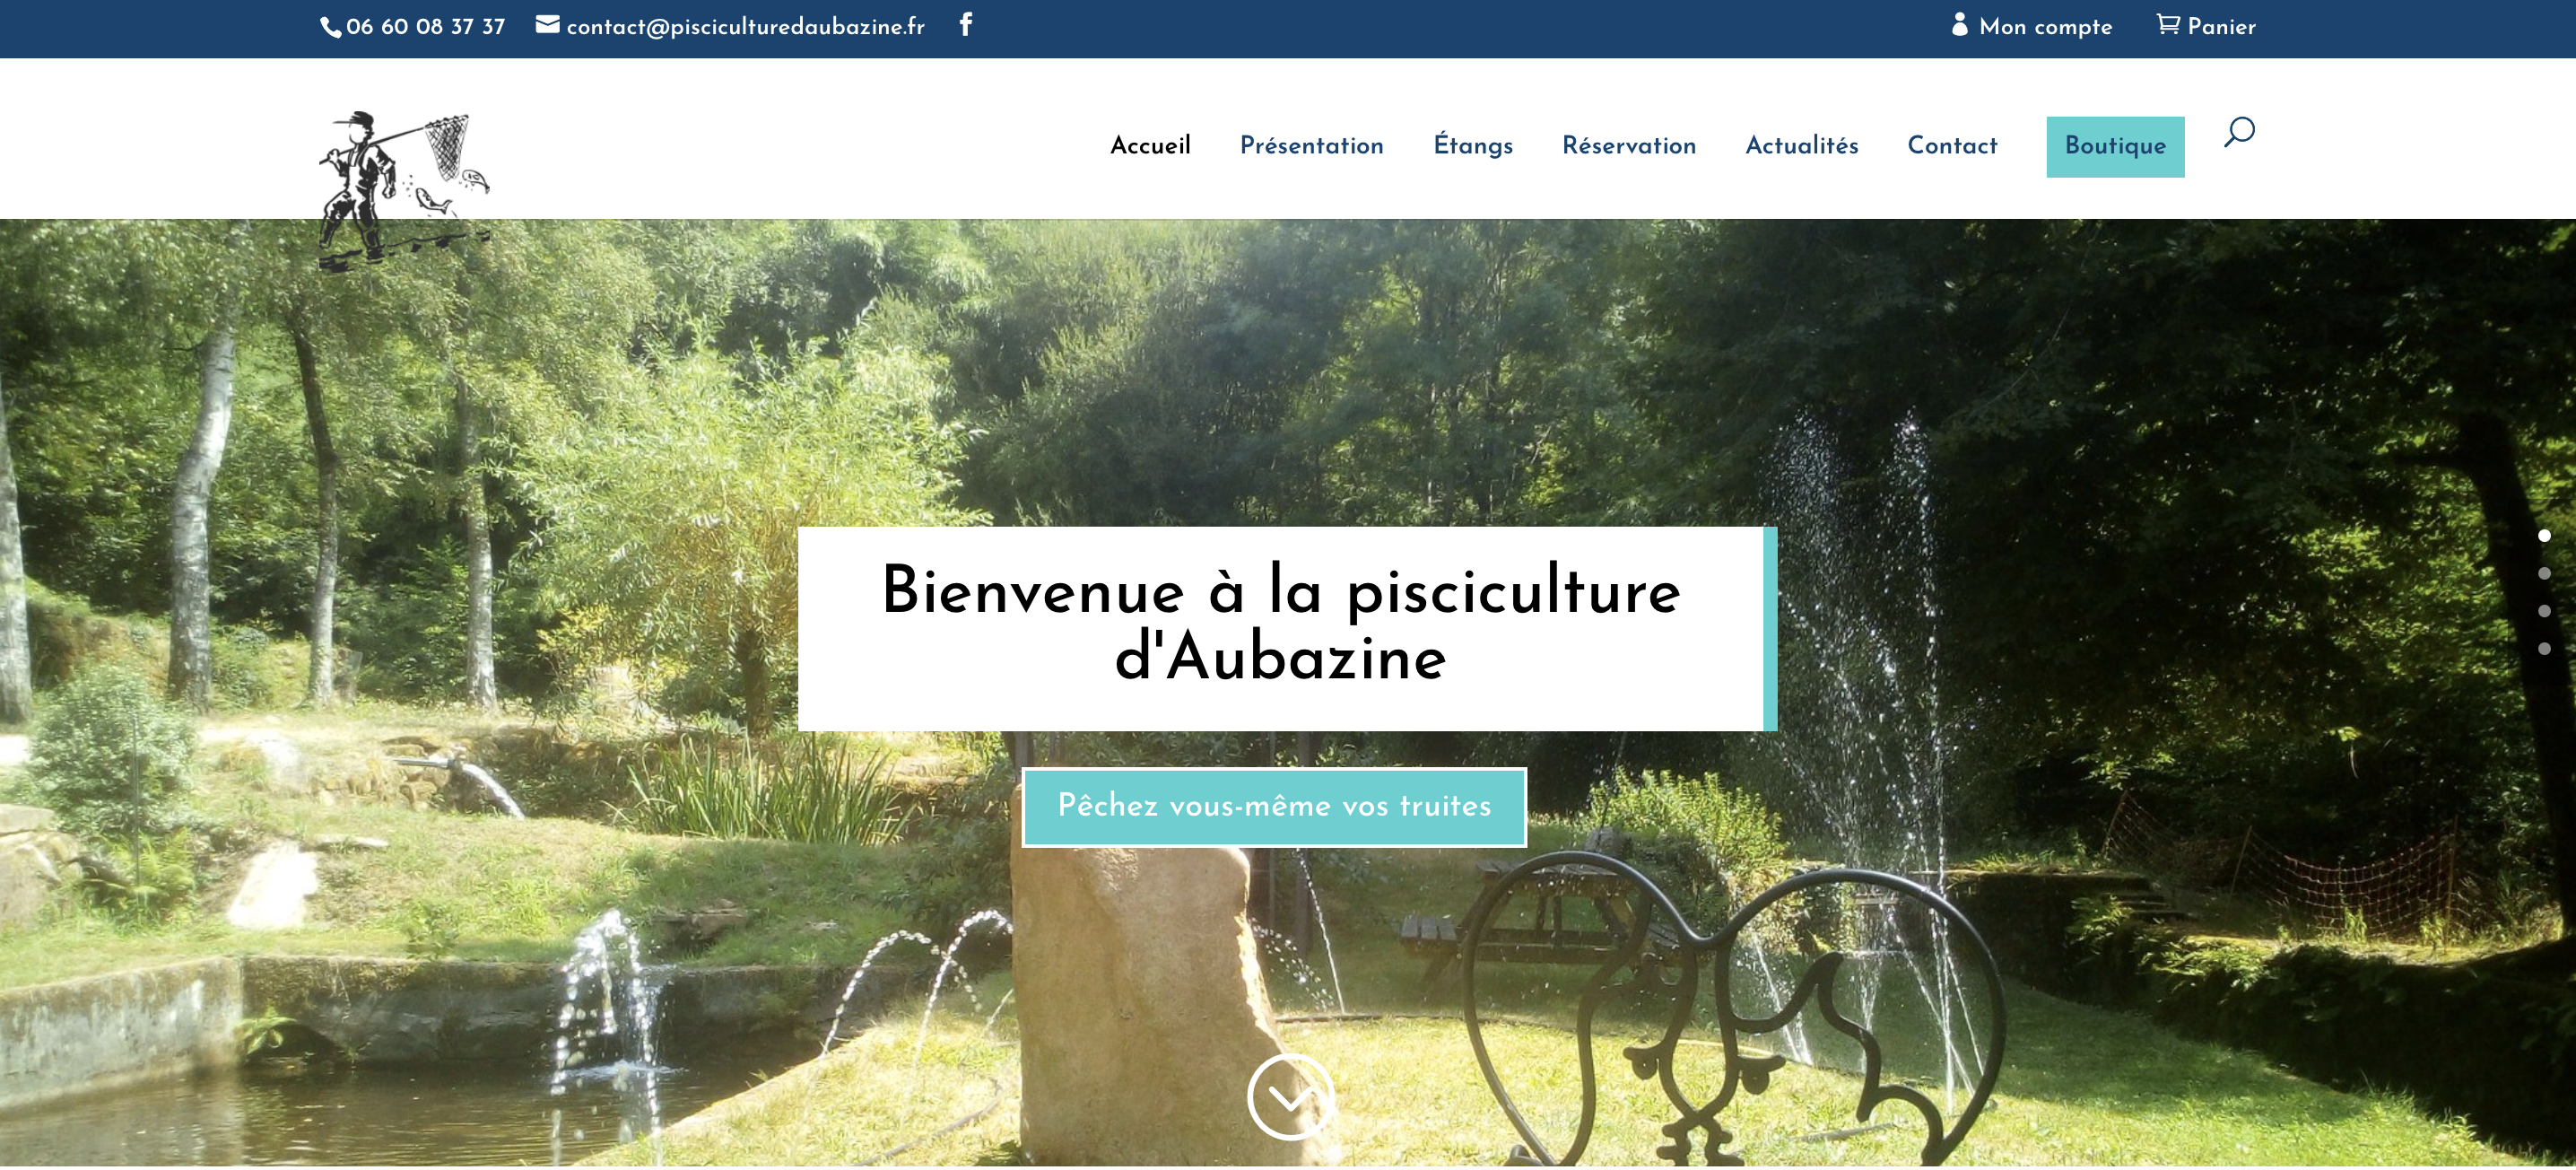 mockup du site Pisciculture d'Aubazine